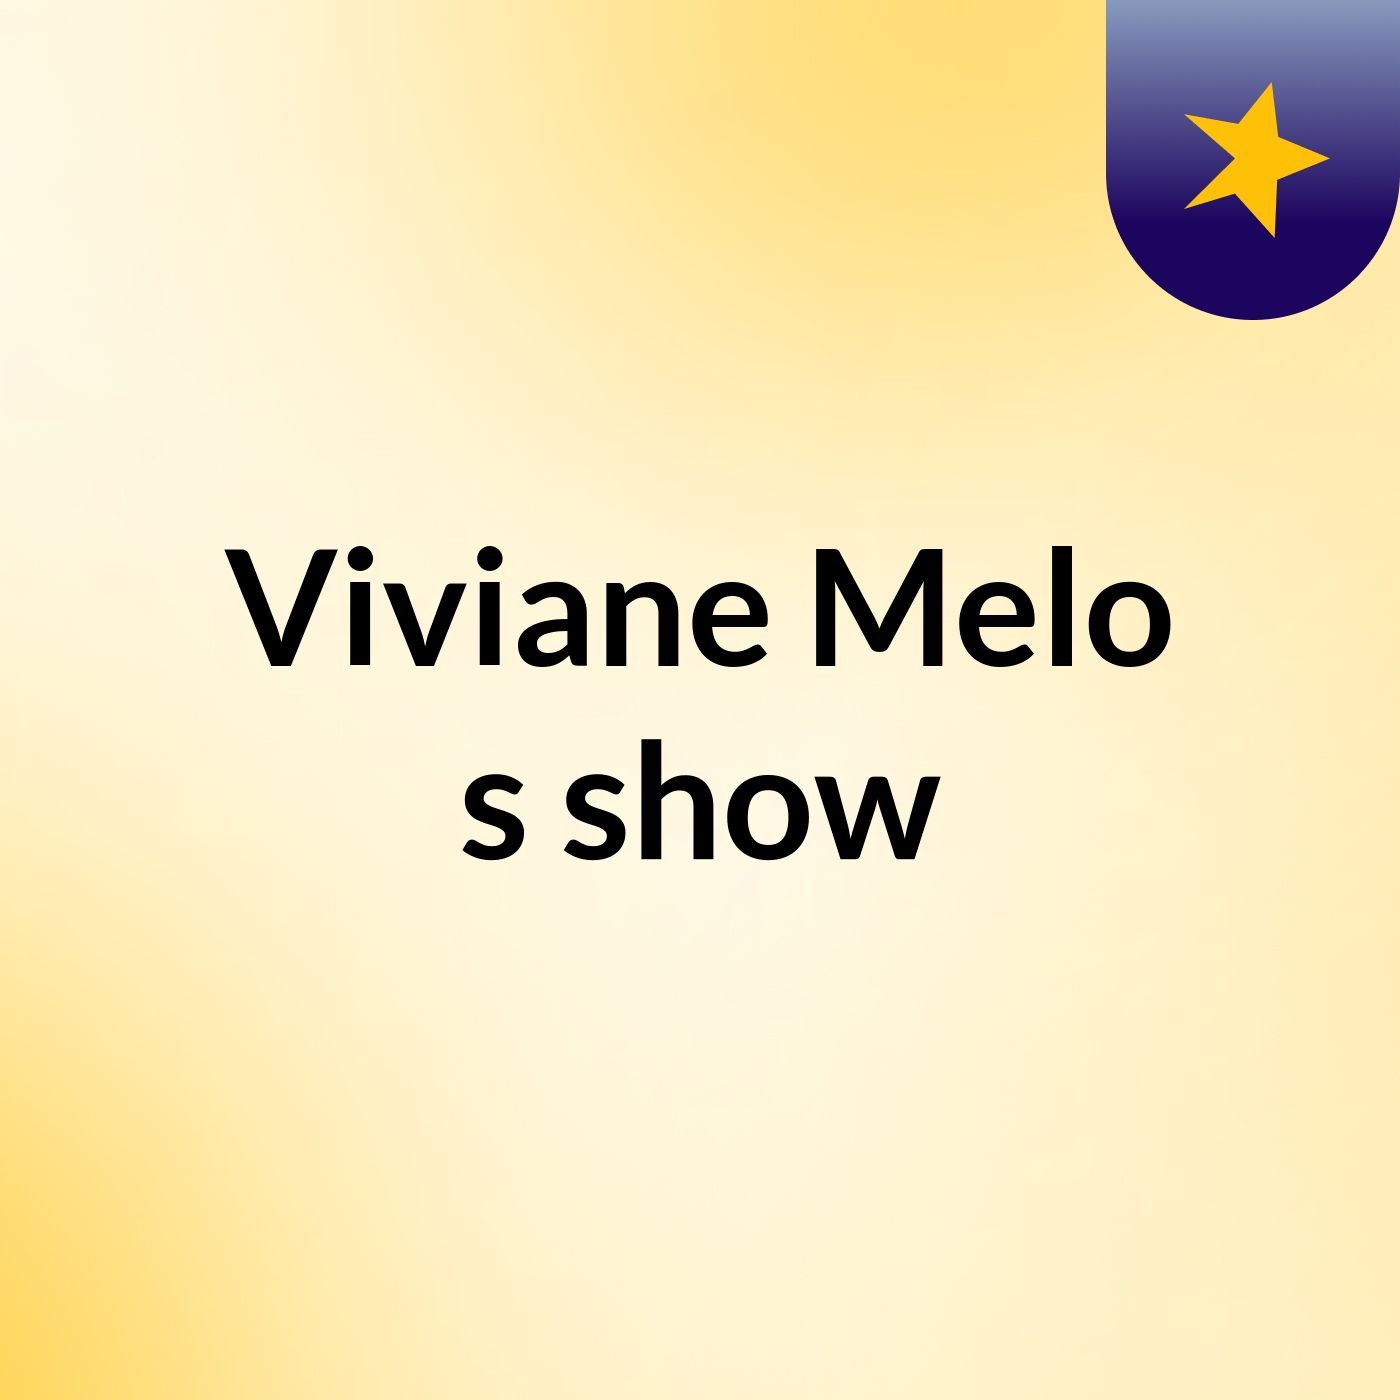 Viviane Melo's show